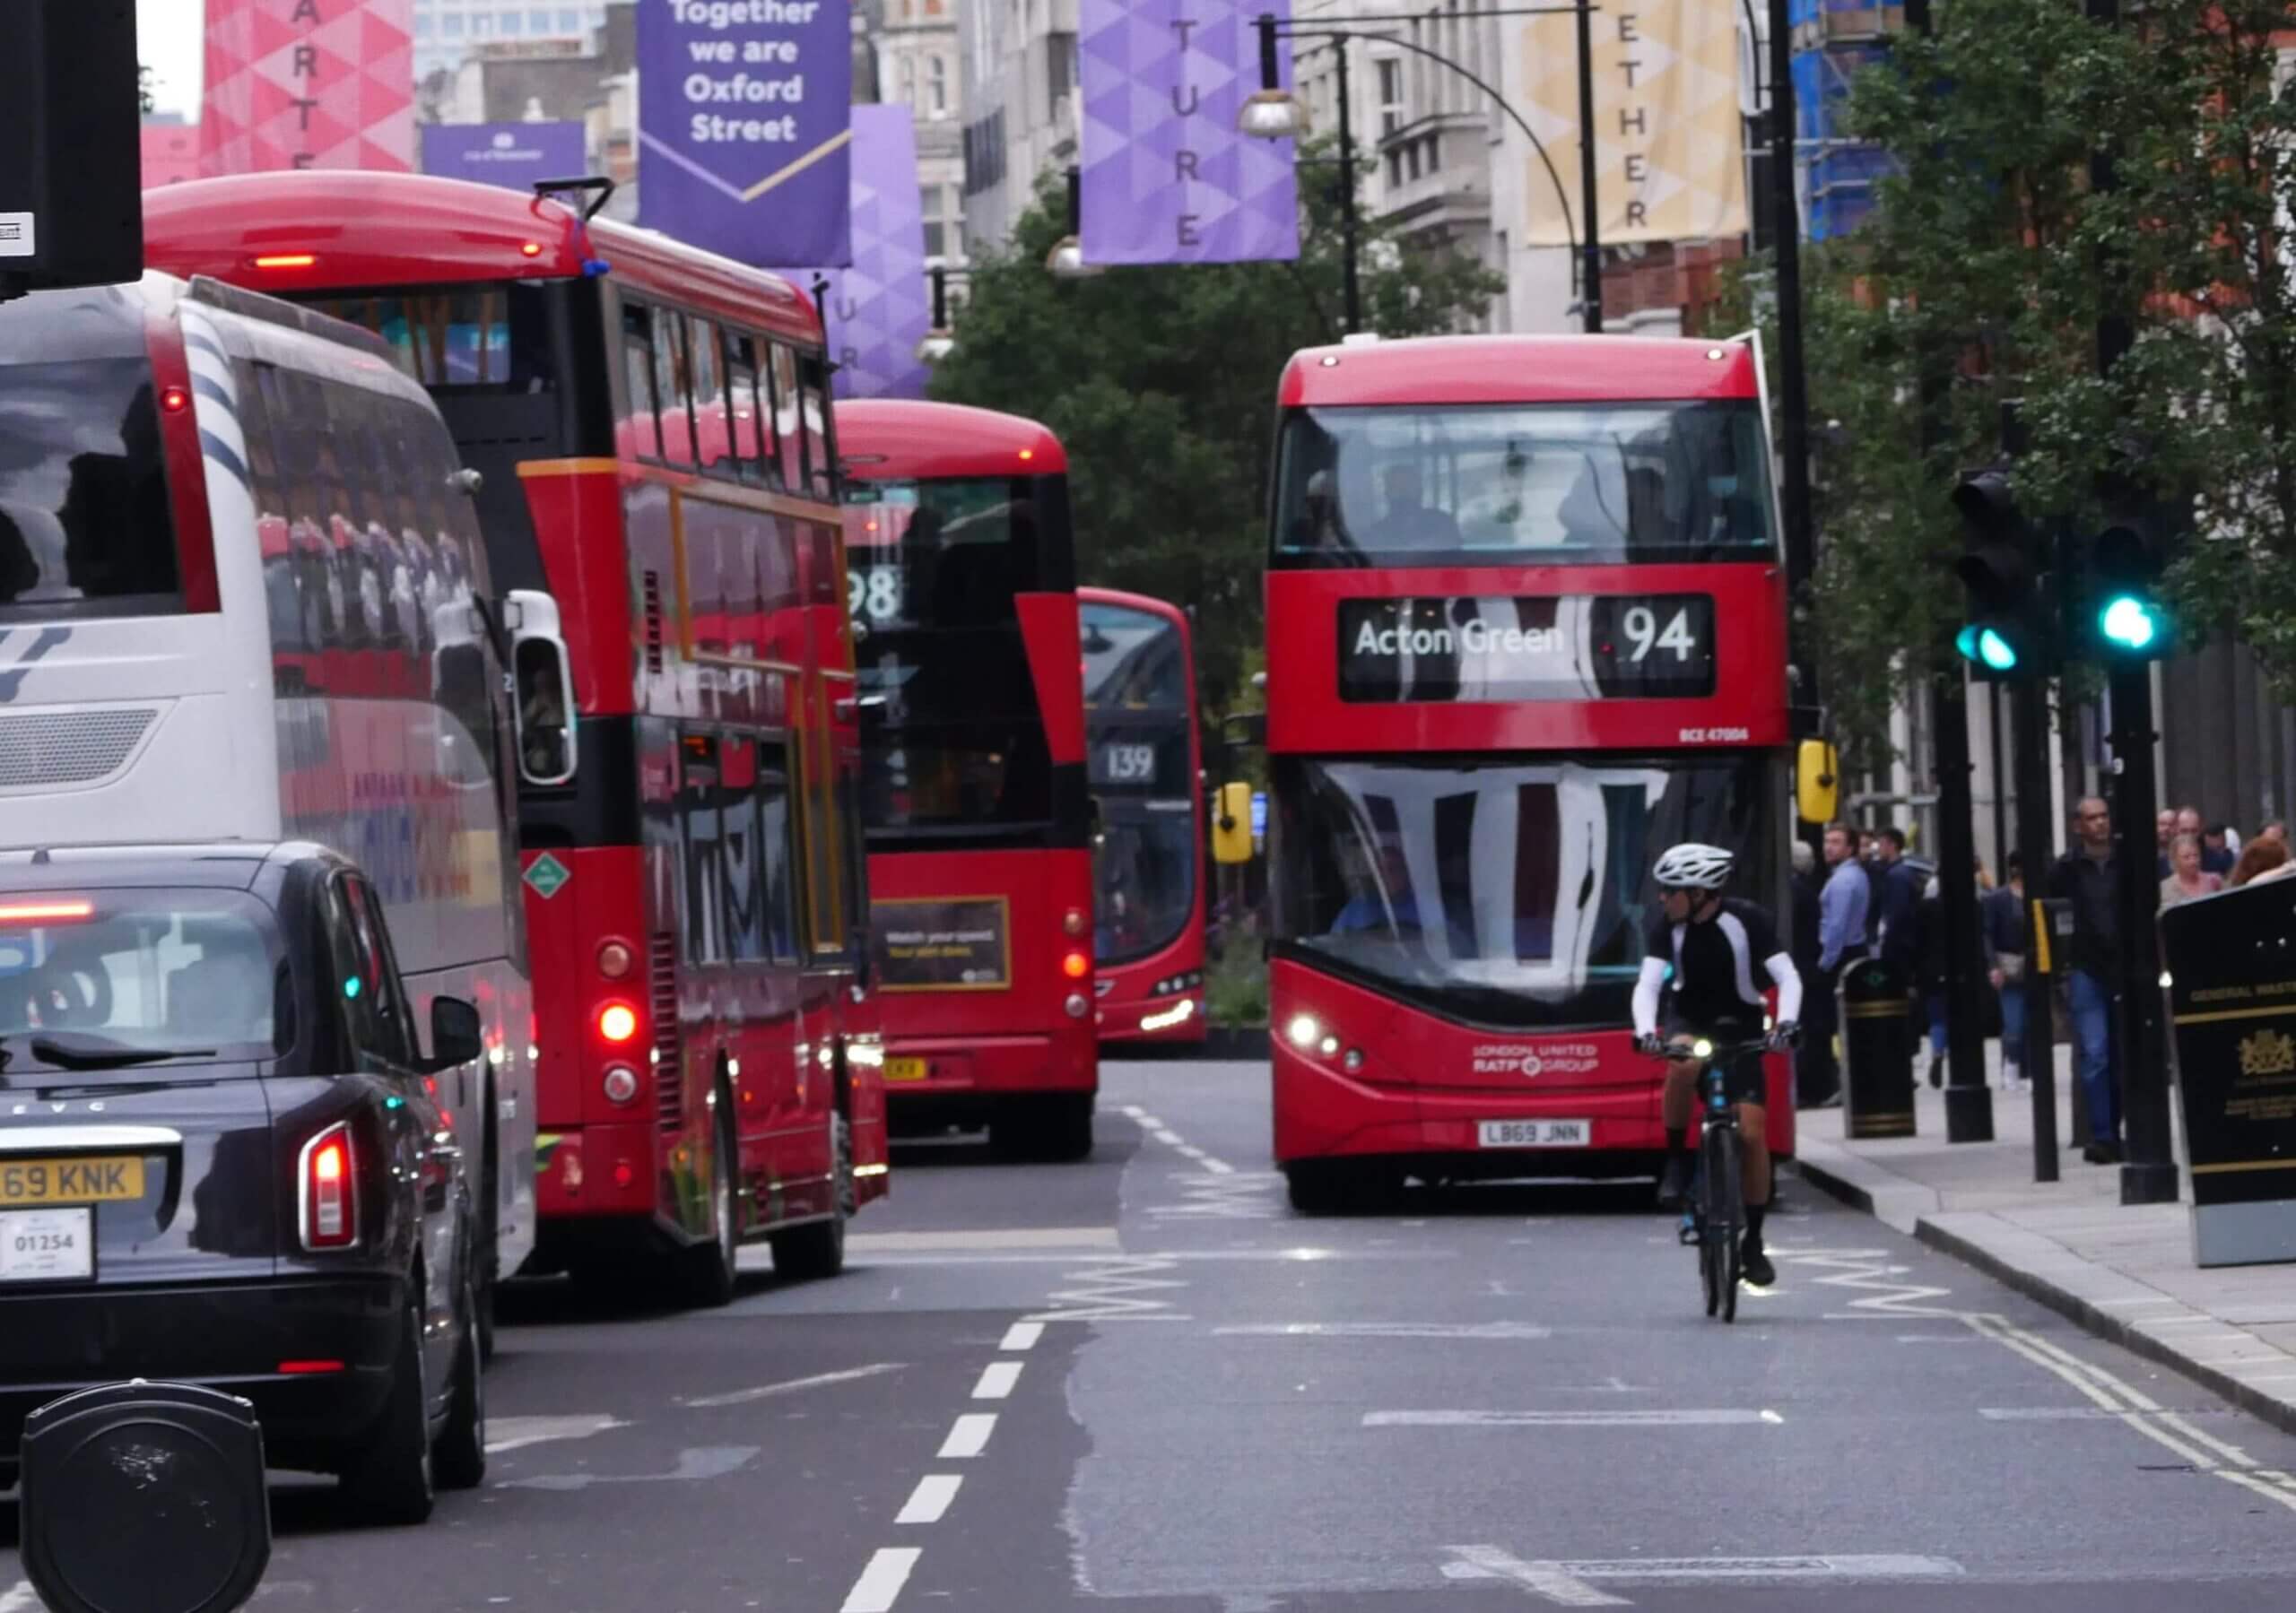 إضراب لسائقي الحافلات يتسبب بإرباك شديد في أحياء جنوب لندن